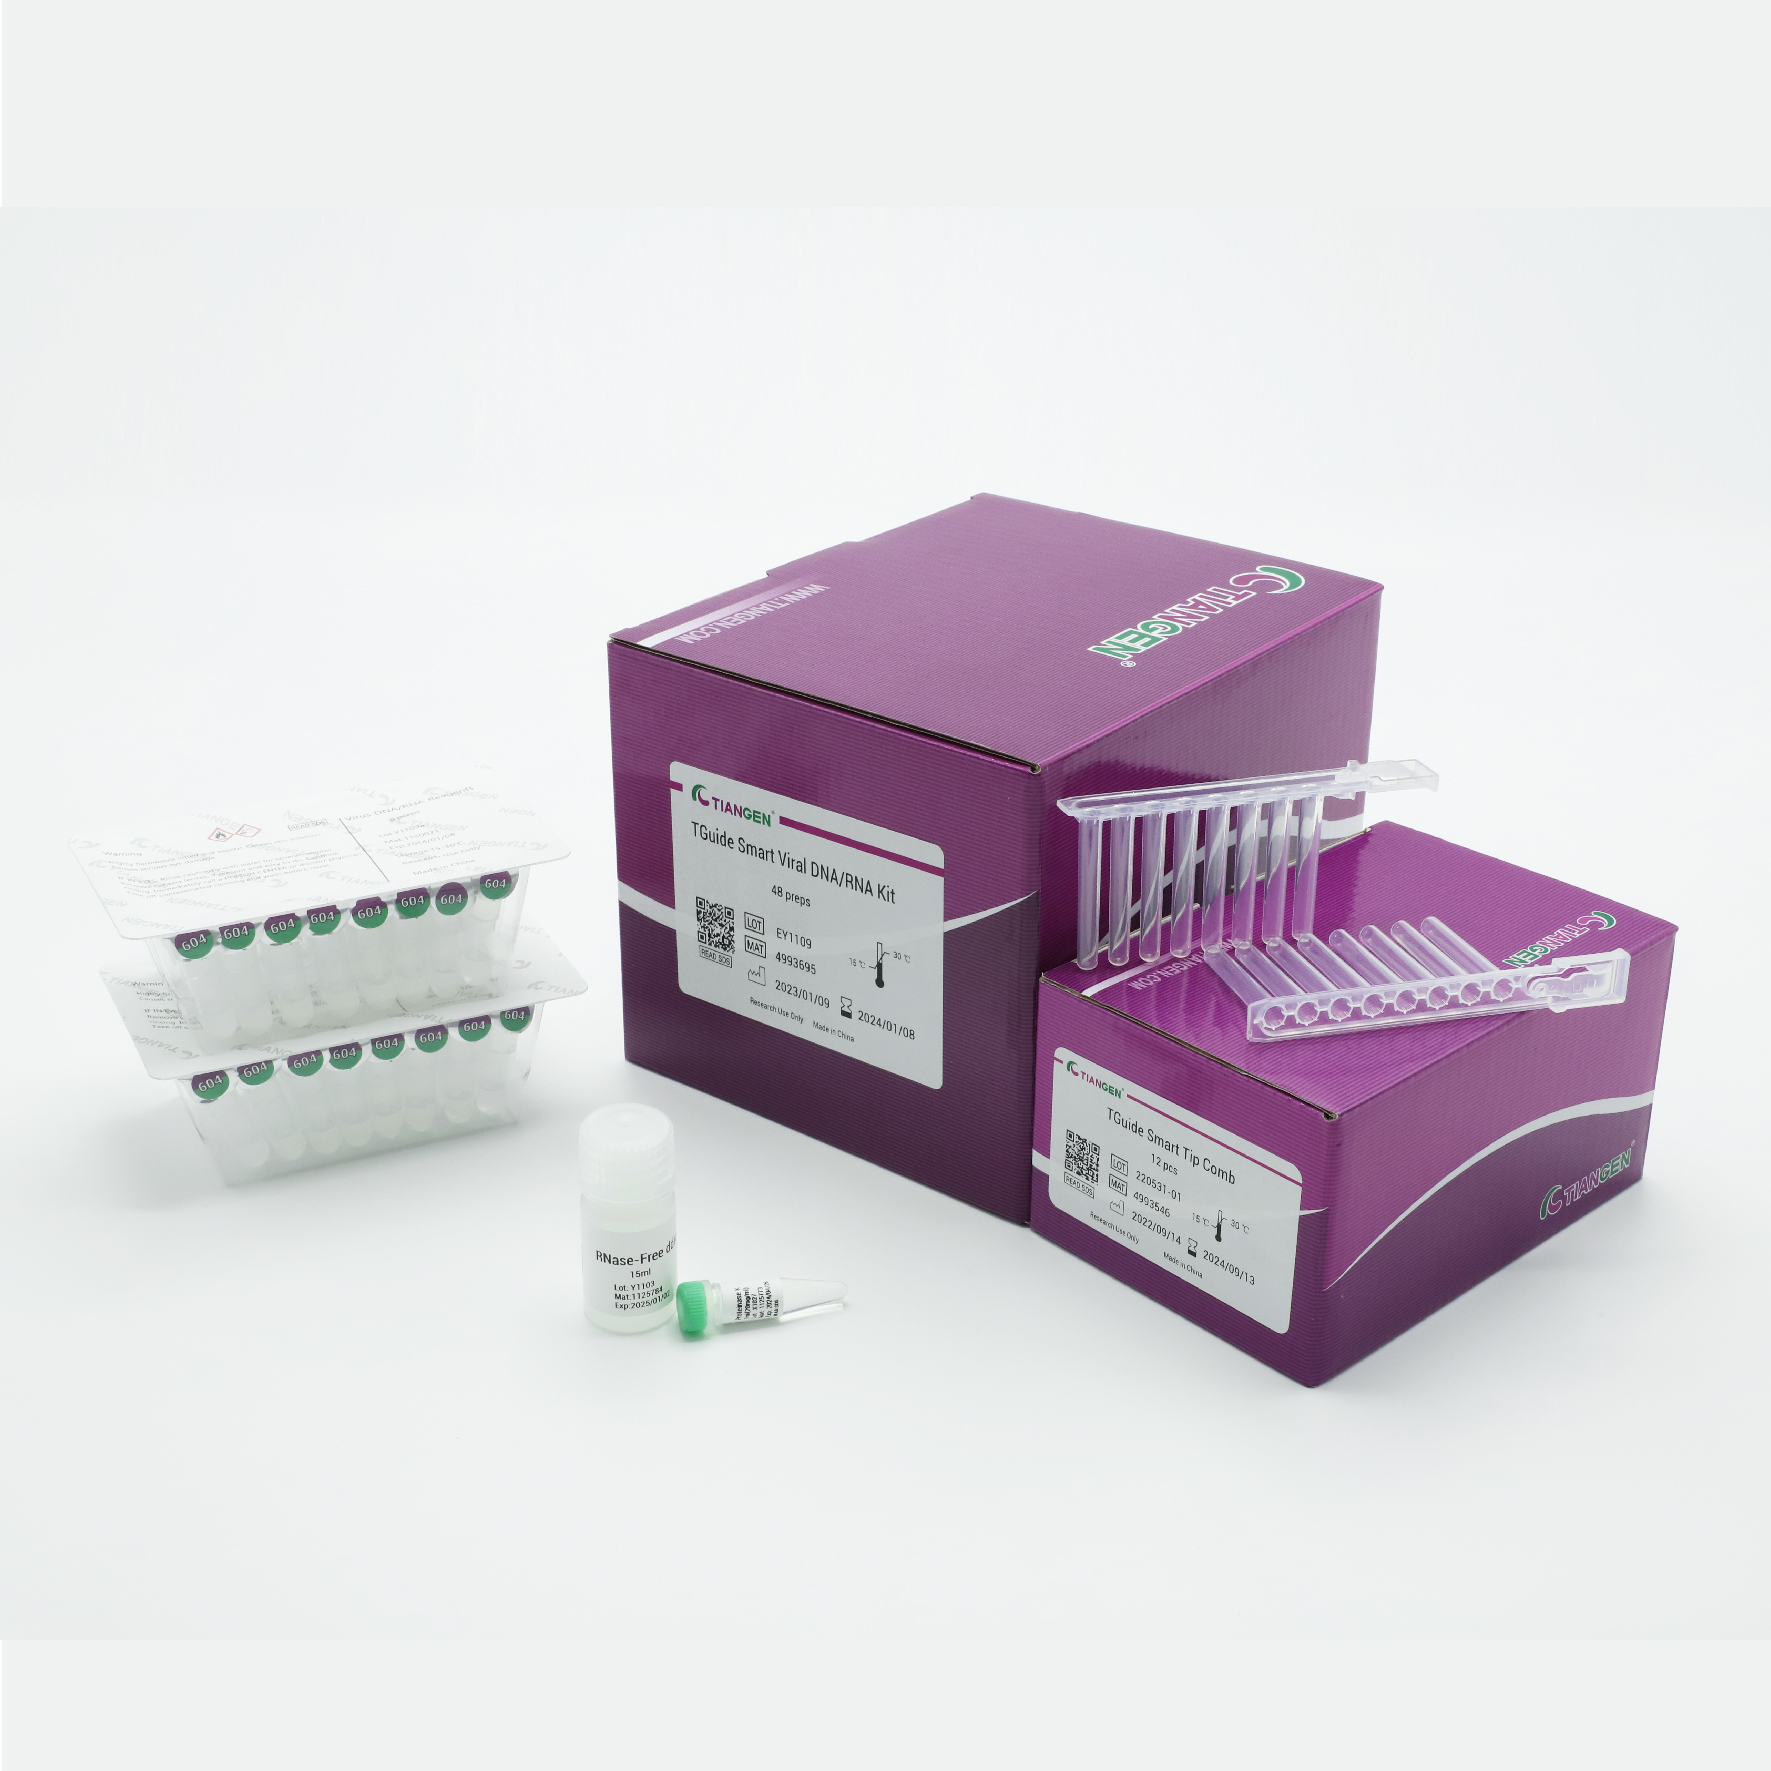 TGuide Smart Viral DNA/RNA Kit